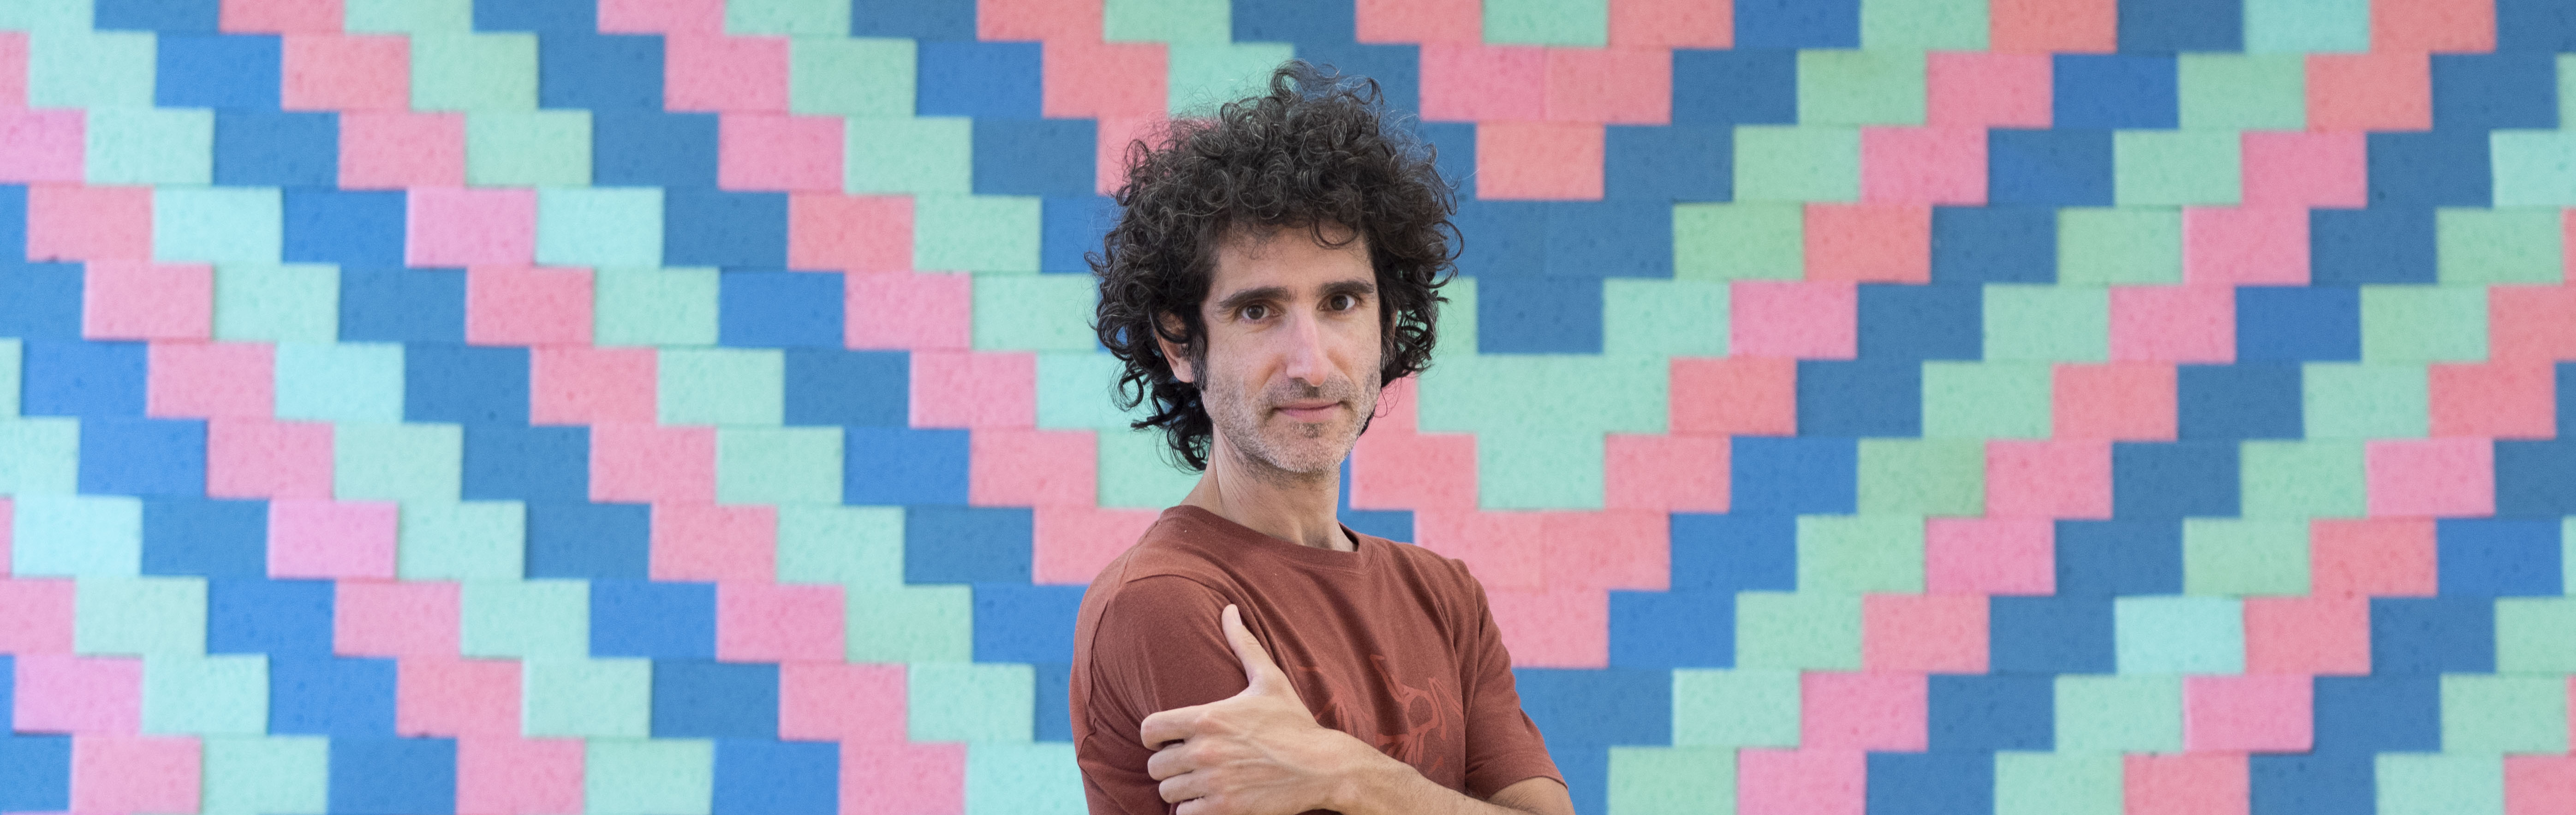 El museo de la UMU expone el proyecto ‘RGB Wall’ de Víctor Solanas-Díaz